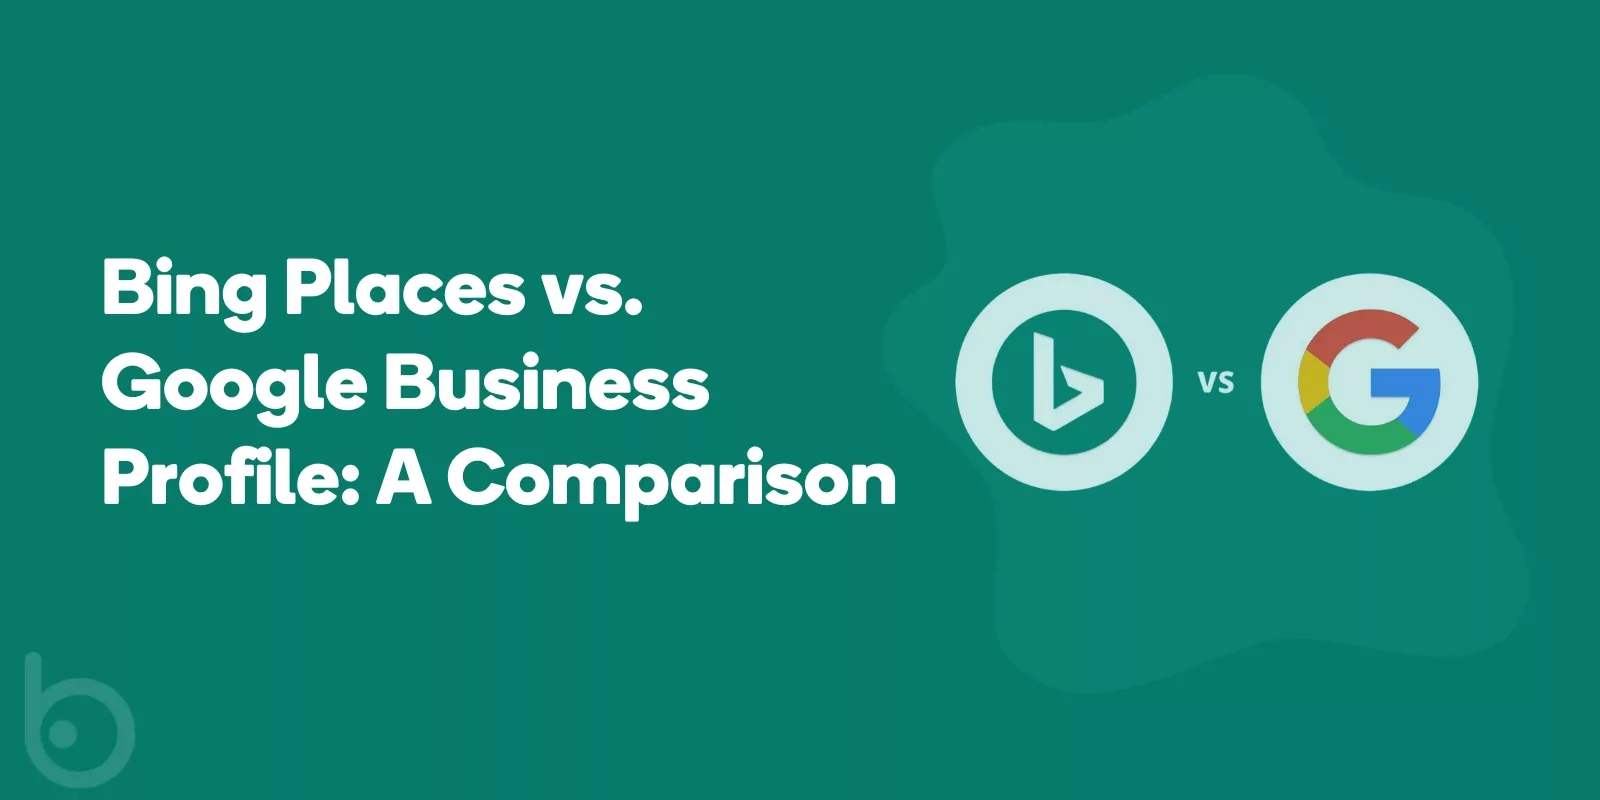 Bing Places vs. Google Business Profile A Comparison